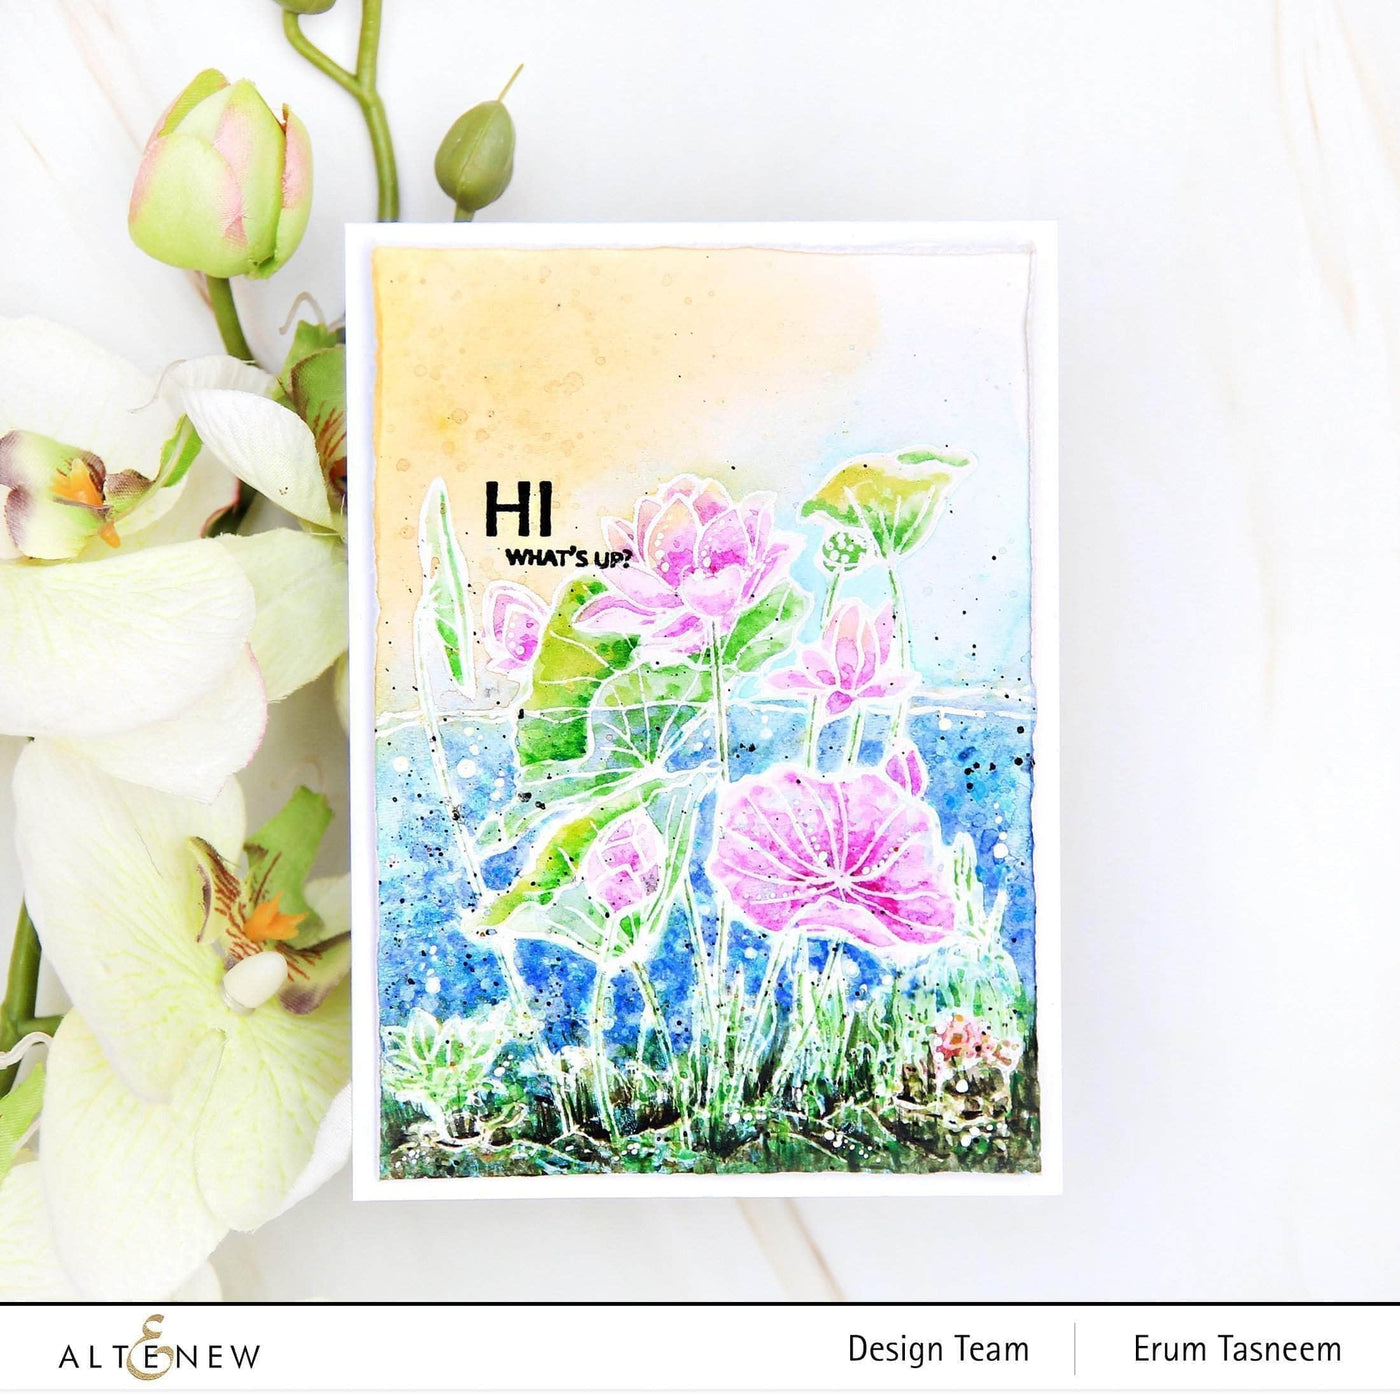 Altenew Stamp & Watercolor Bundle Paint-A-Flower: Lotus & Artists' Watercolor 24 Pan Set Bundle